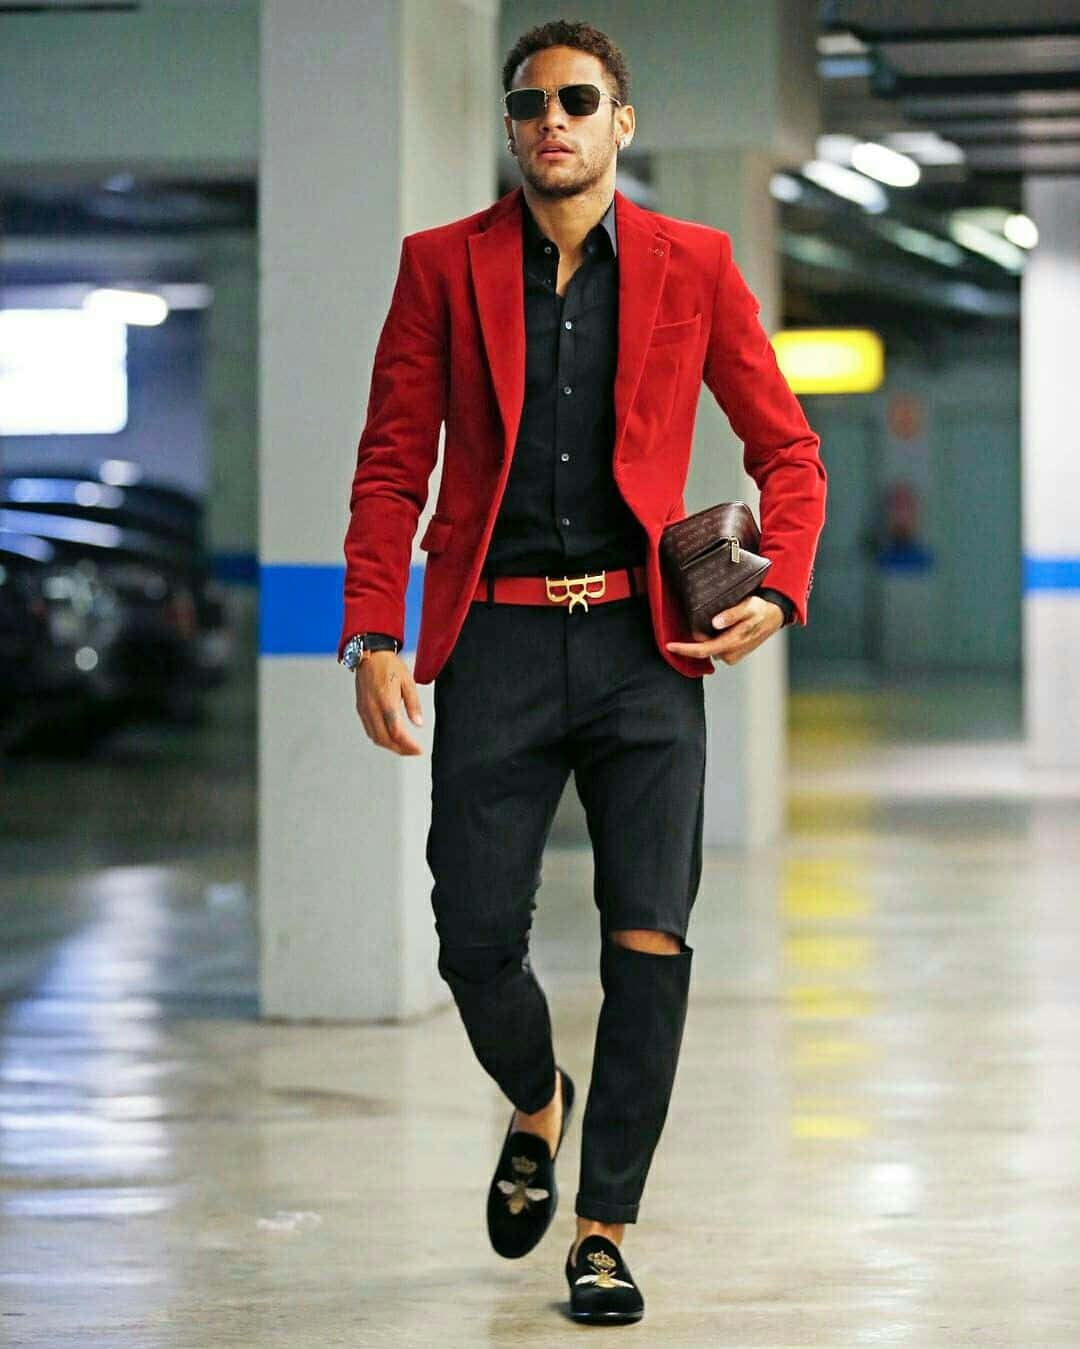 Fotodi Neymar In Giacca Rossa